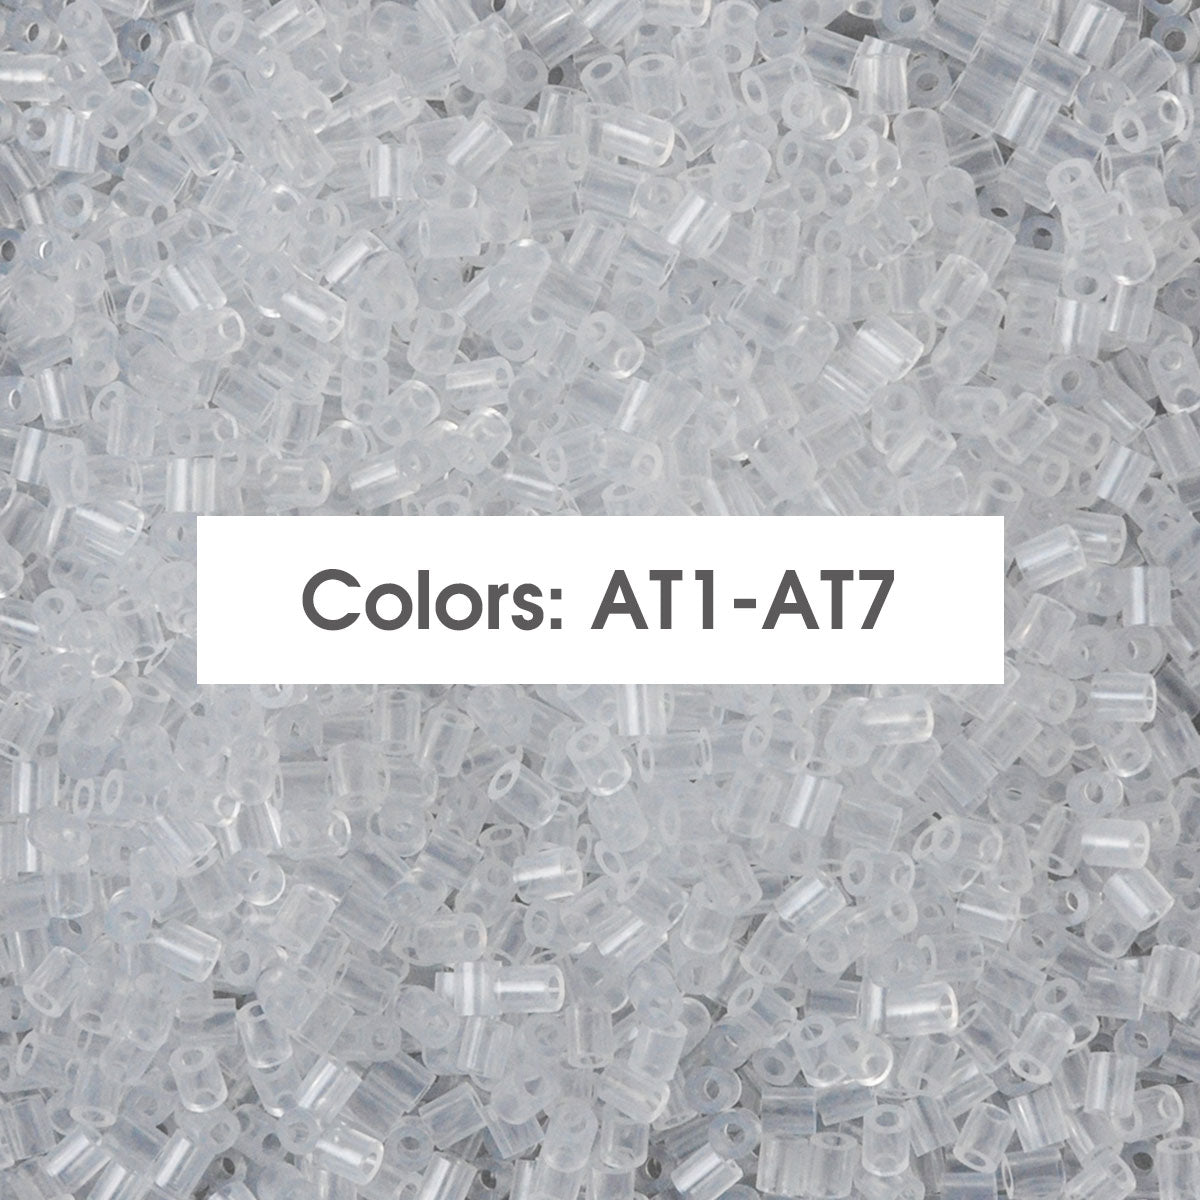 (Colores translúcidos AT1-AT7) A-500G a granel